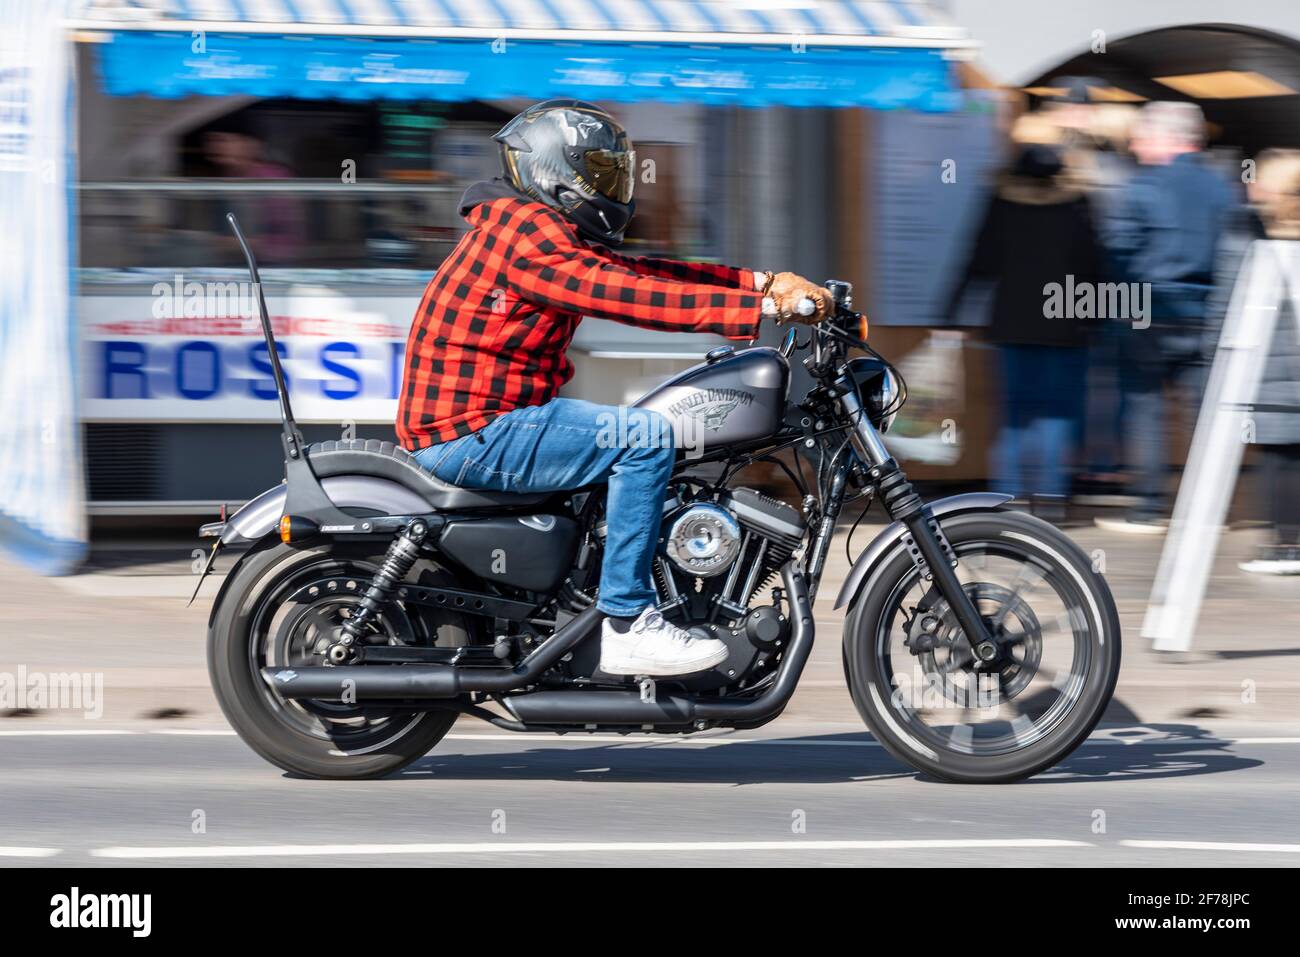 Harley Davidson motociclista, a Southend on Sea, Essex, Regno Unito. Motore S&S Super. Cavaliere che indossa una camicia in plaid e jeans in denim blu. Giorno di sole Foto Stock